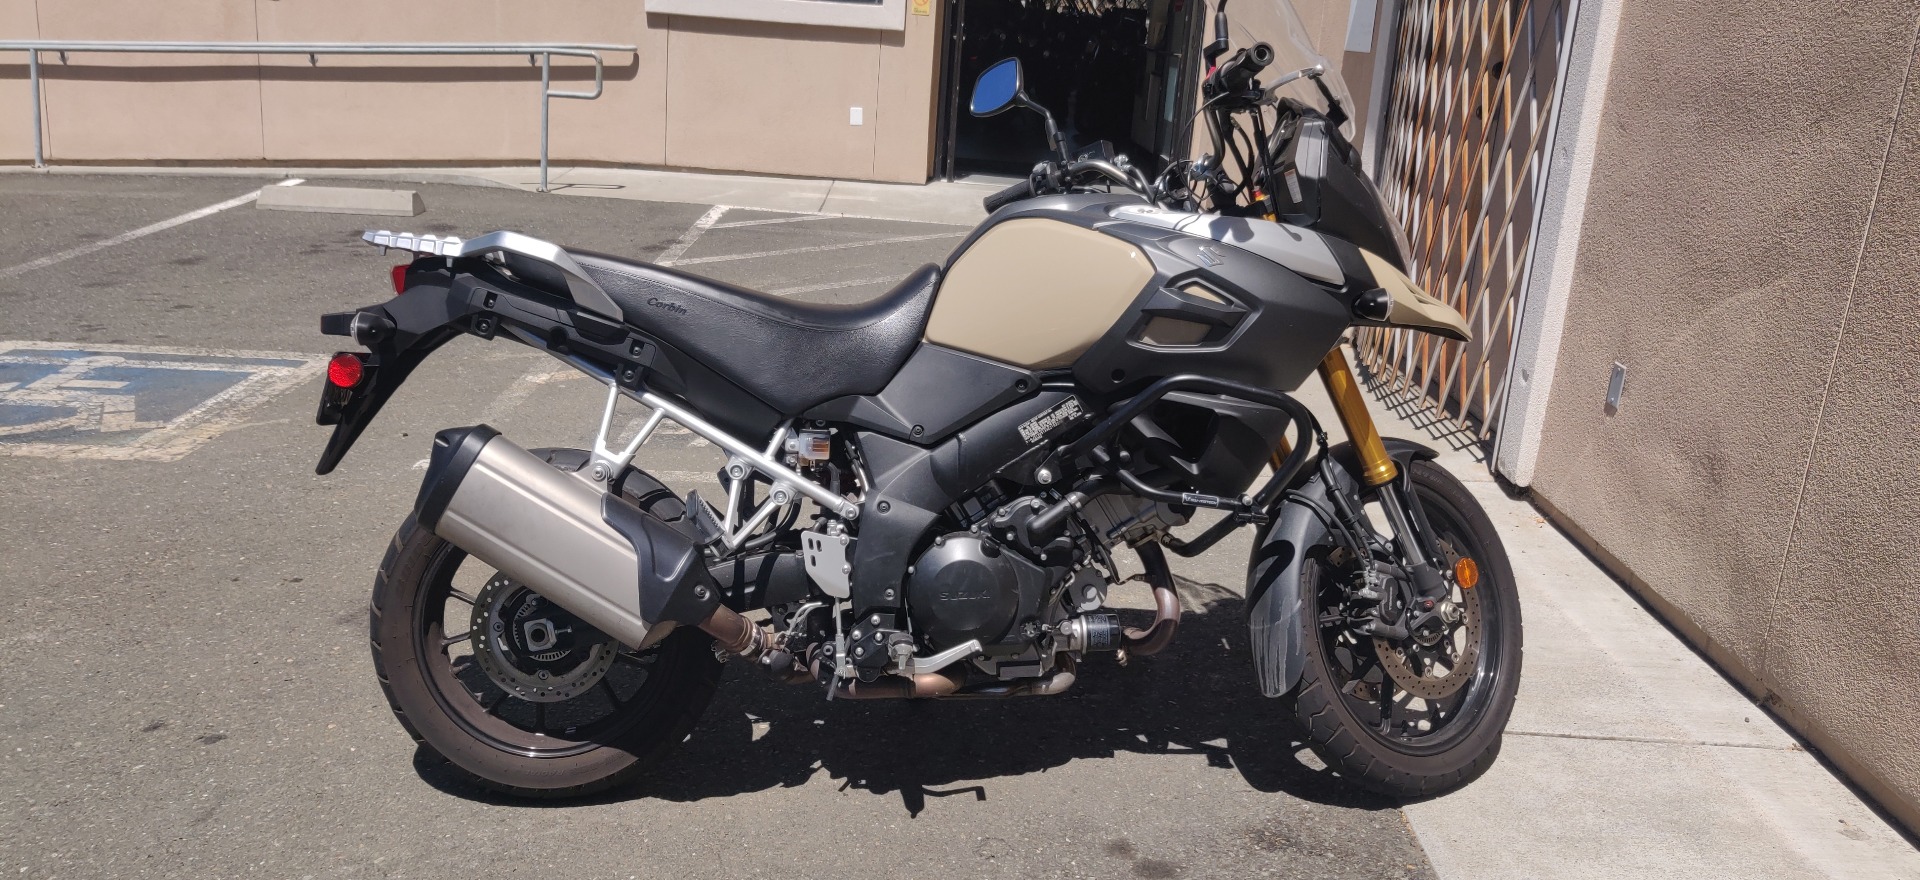 2014 Suzuki V-Strom 1000 ABS in Vallejo, California - Photo 1